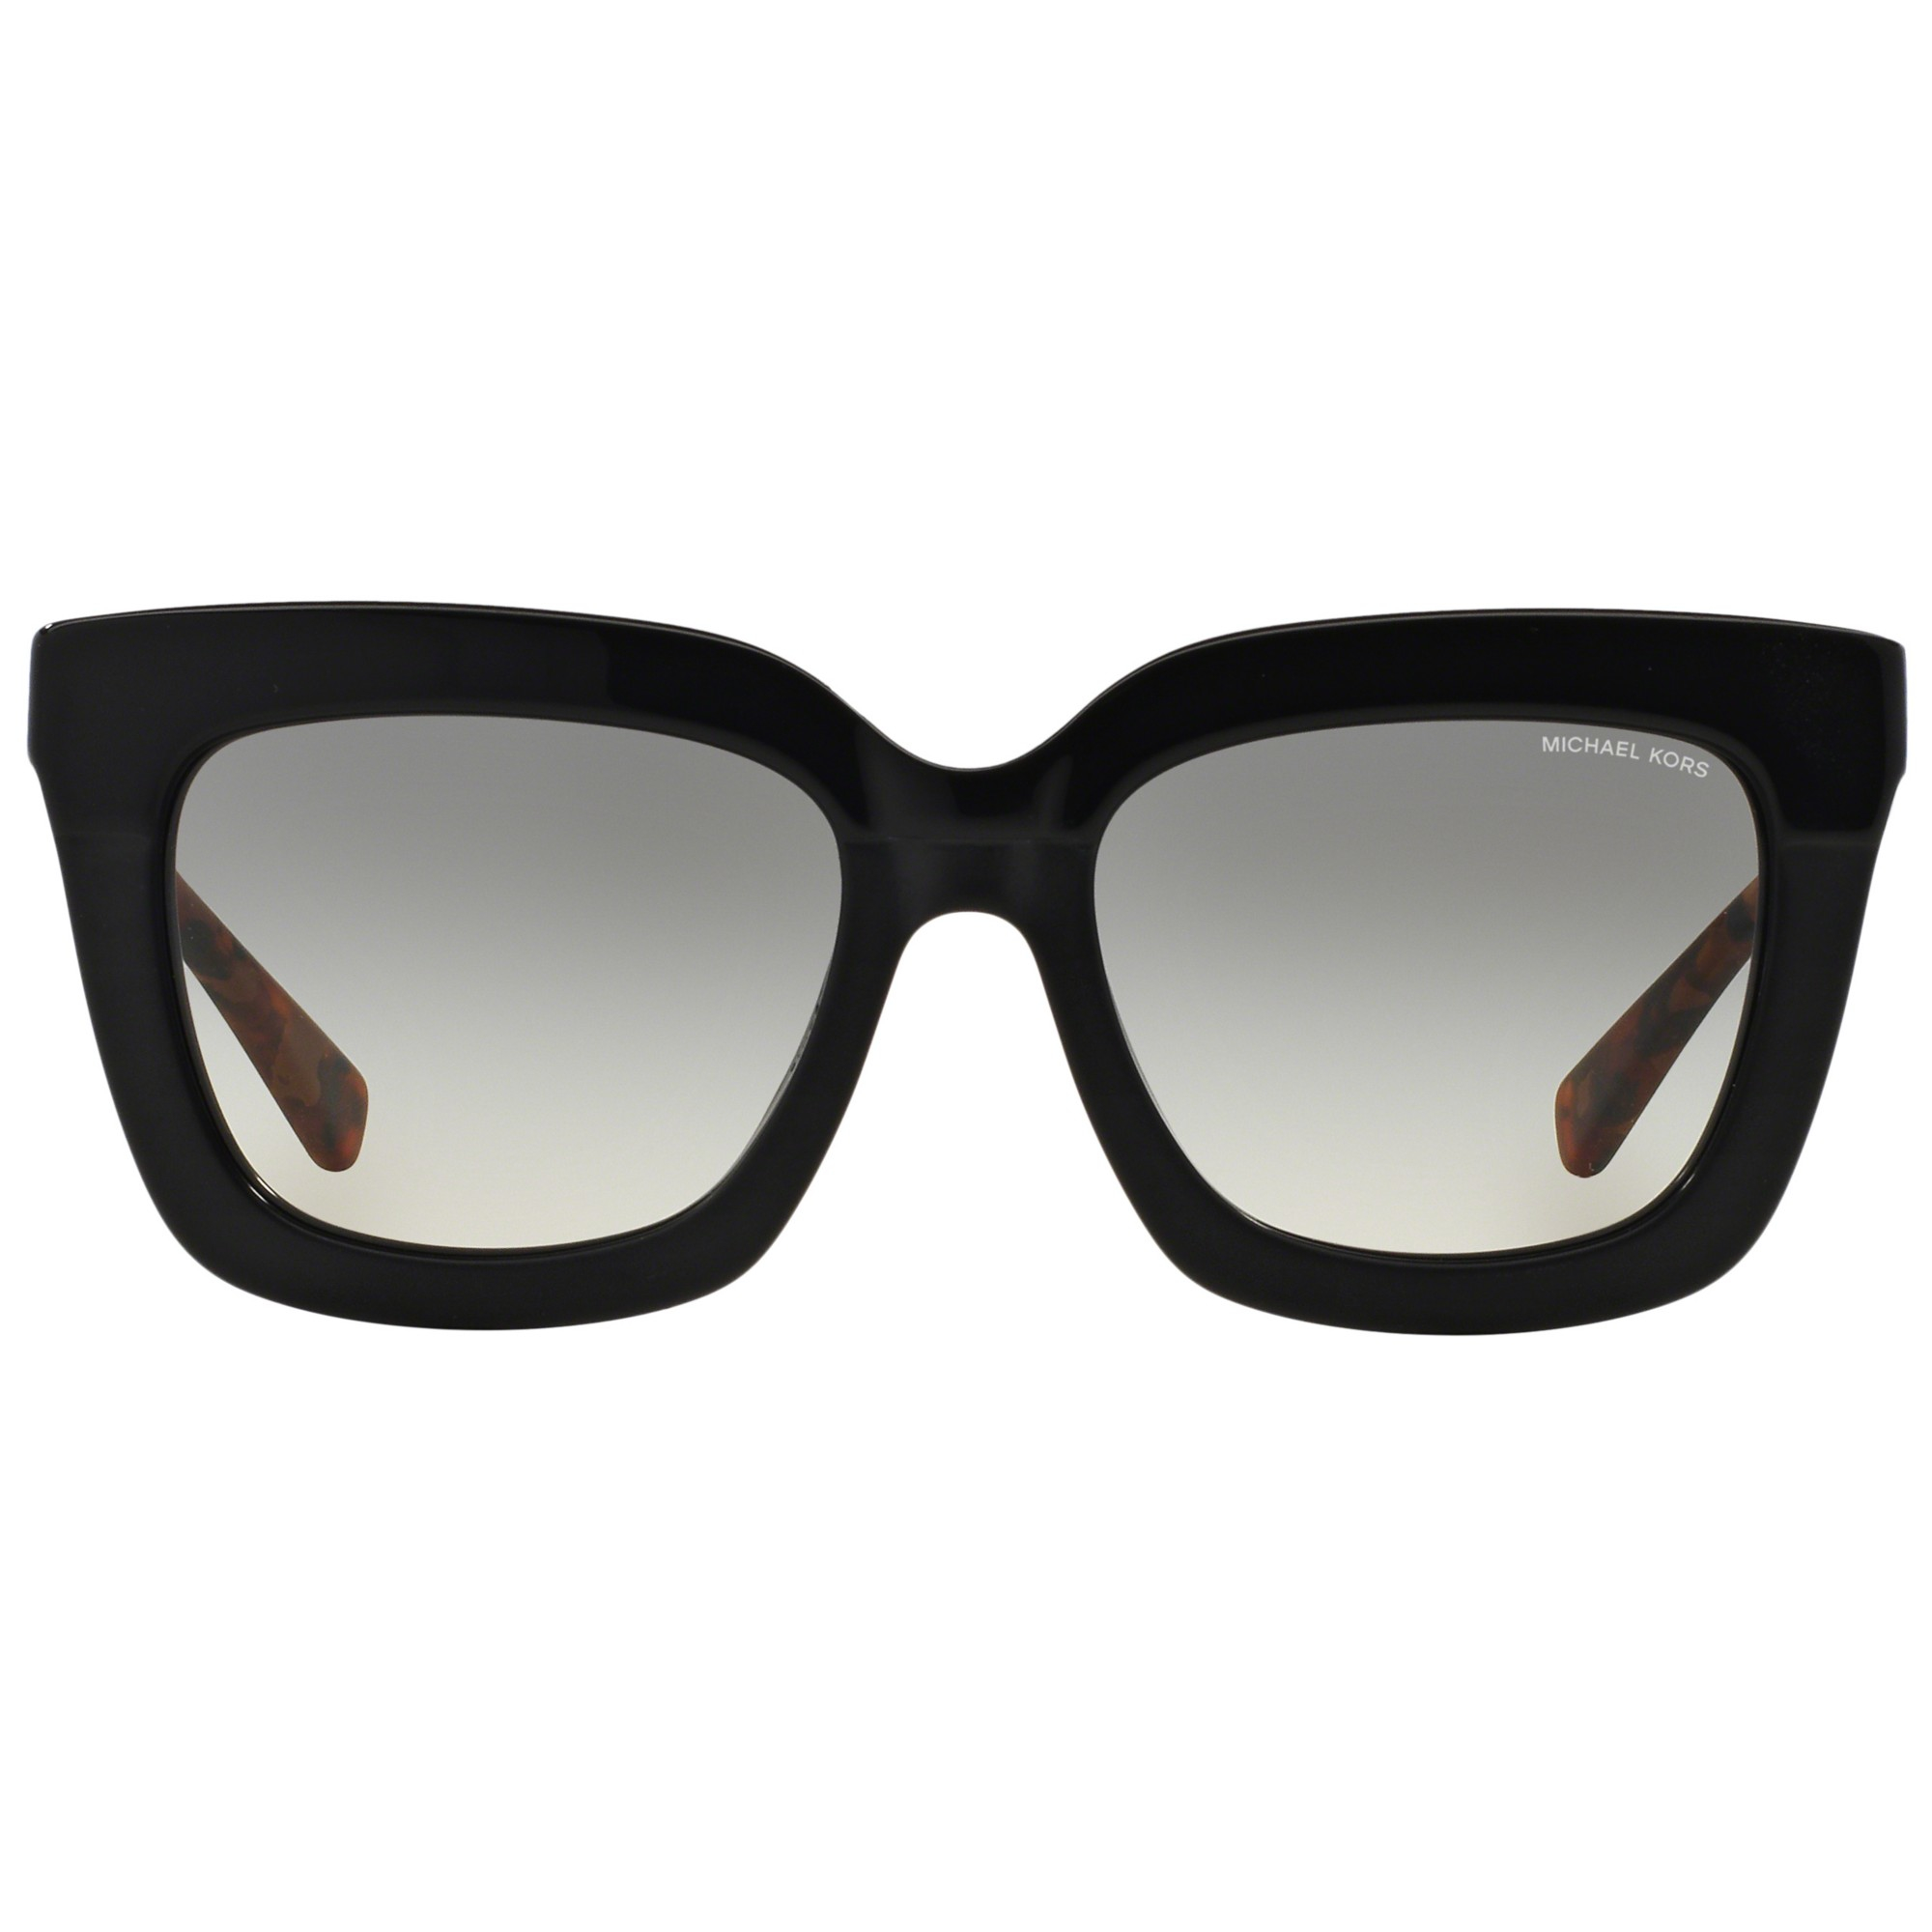 michael kors black square sunglasses